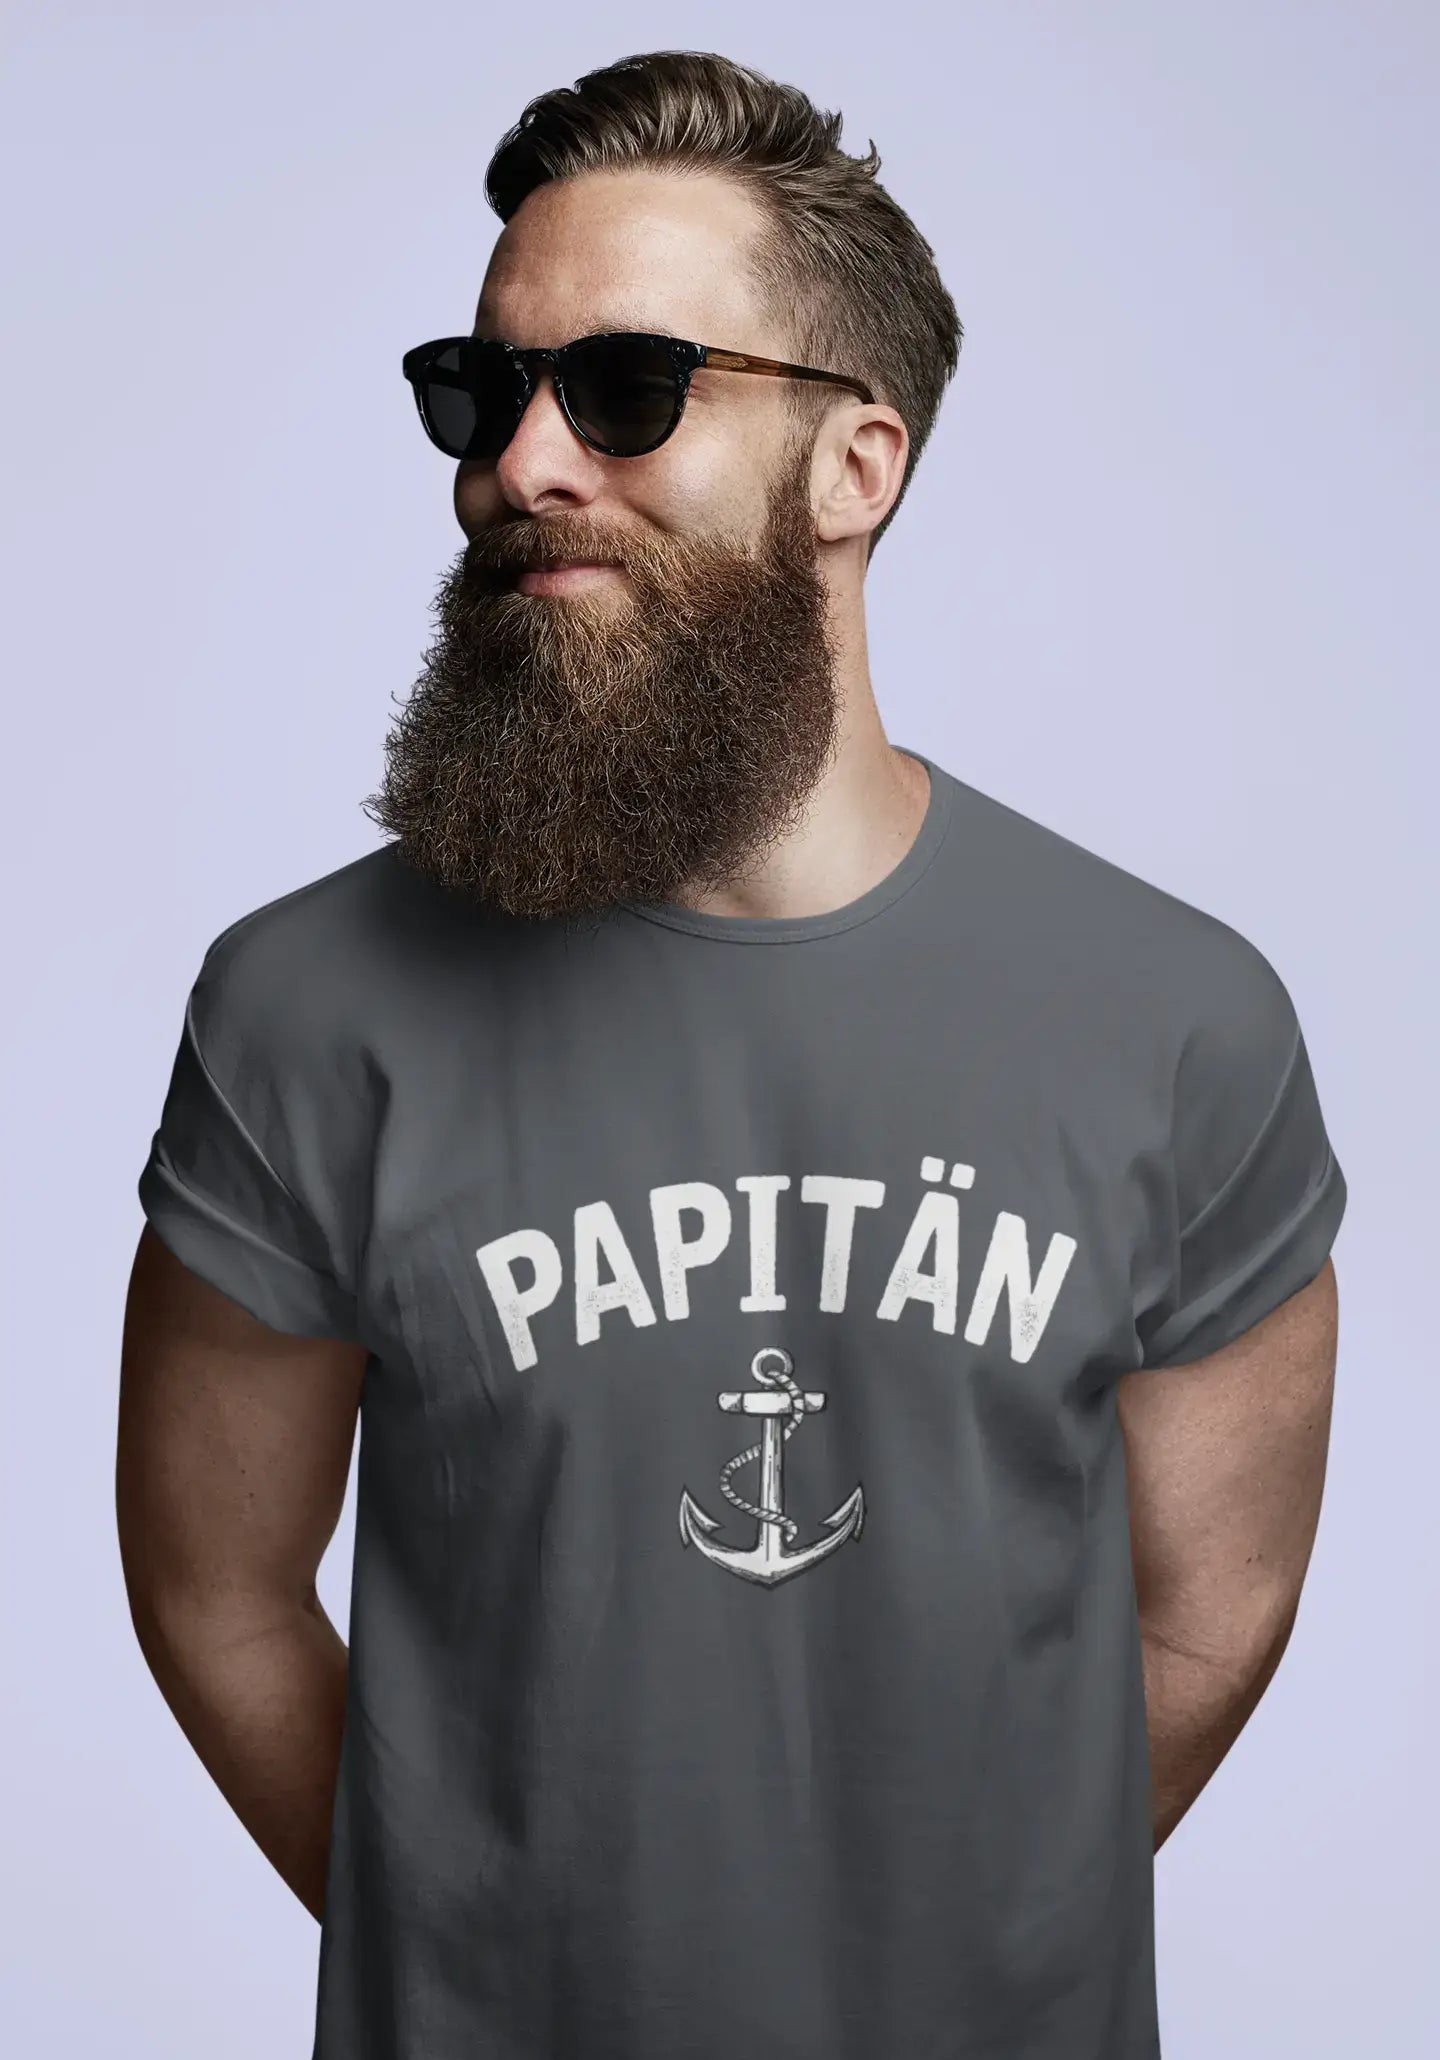 Men's Graphic T-Shirt Papitän Anker Idea Gift